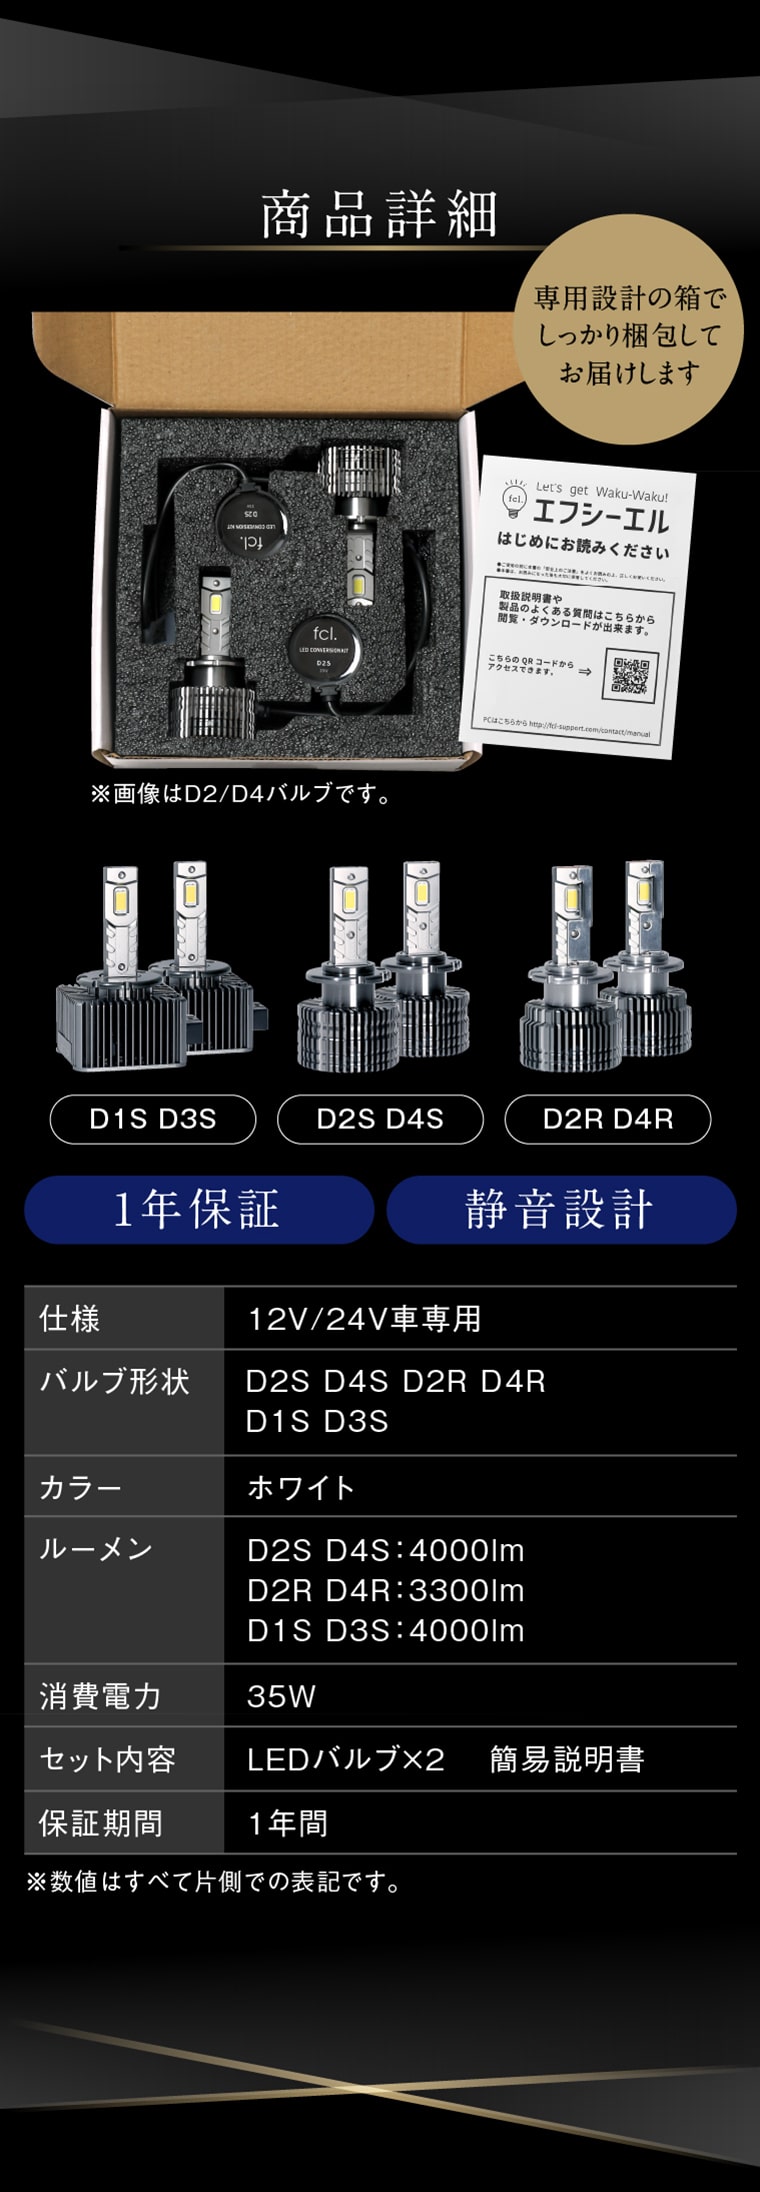 D2S D2R D4S D4R D1S D3S LEDバルブ詳細